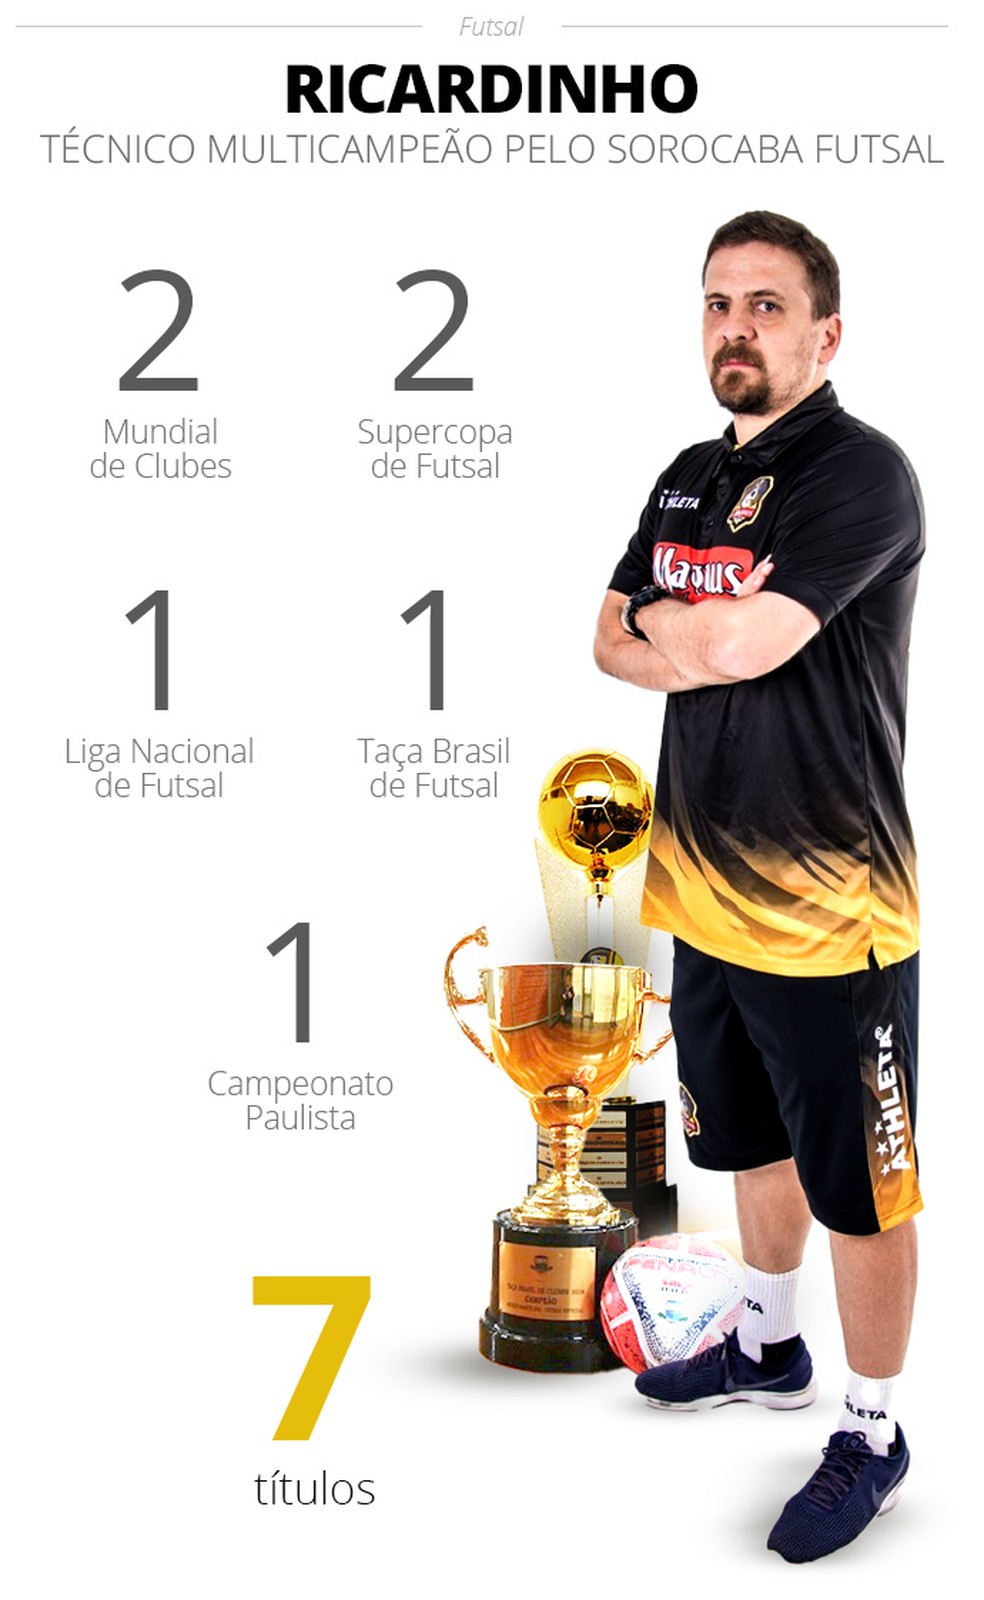 Ricardinho eleito o melhor jogador de futsal do mundo - LusoAmericano